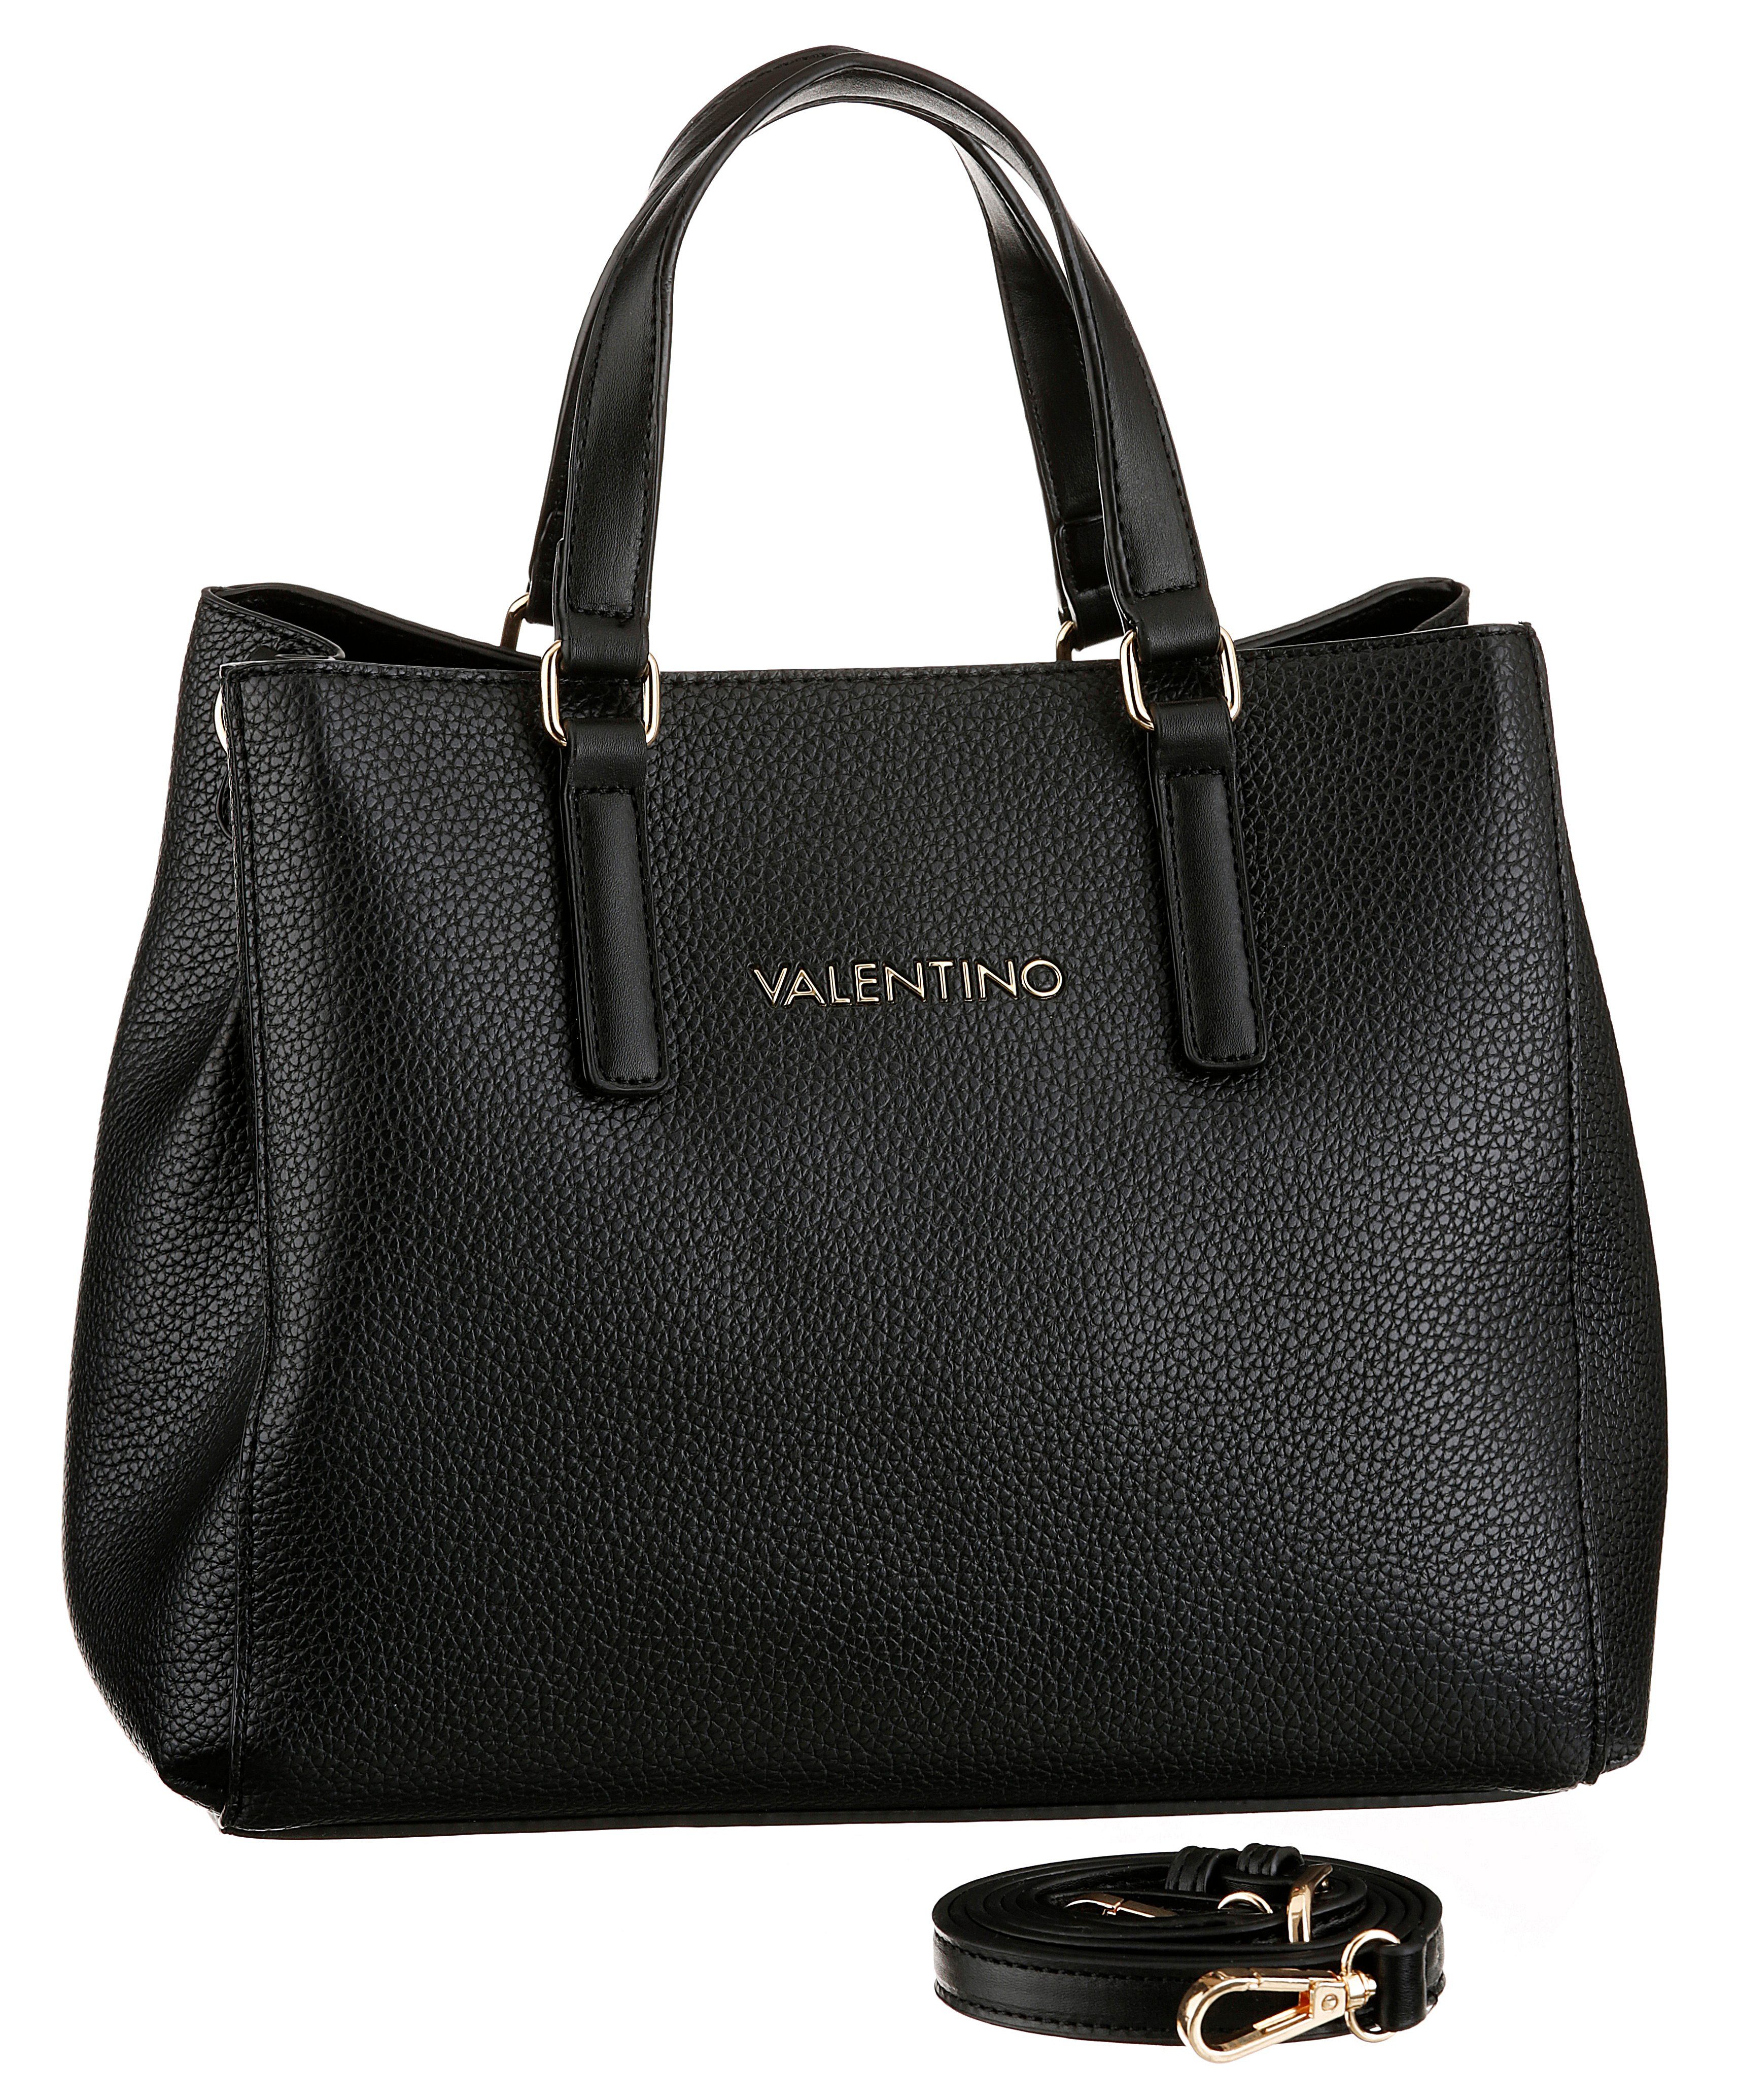 VALENTINO BAGS Handtasche »Superman« online kaufen | OTTO